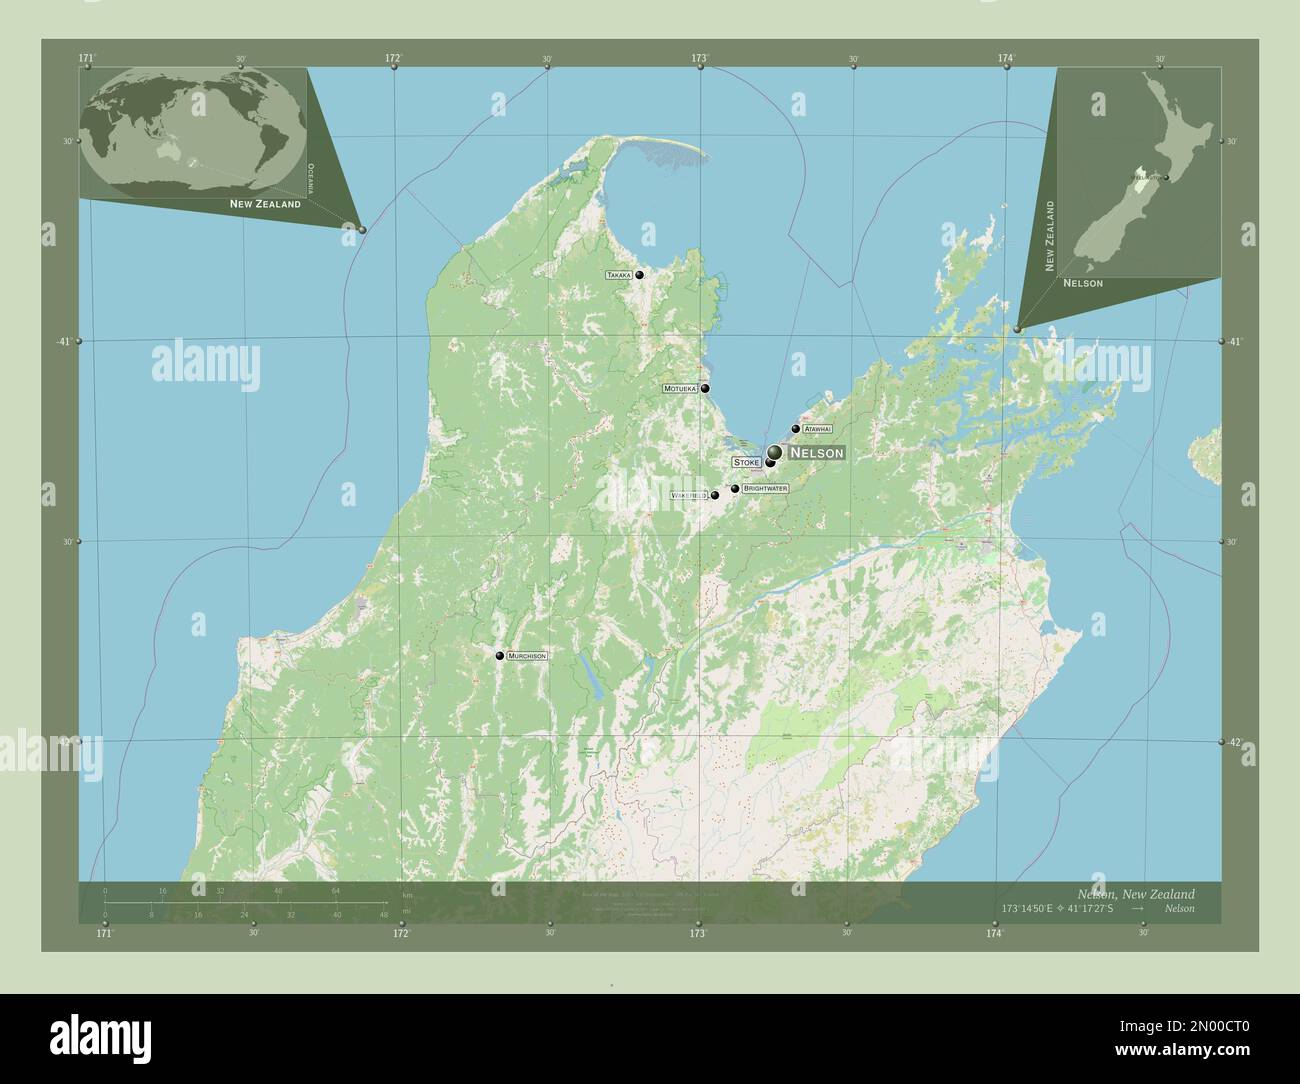 Nelson, Einheit Neuseelands. Straßenkarte Öffnen. Standorte und Namen der wichtigsten Städte der Region. Eckkarten für zusätzliche Standorte Stockfoto